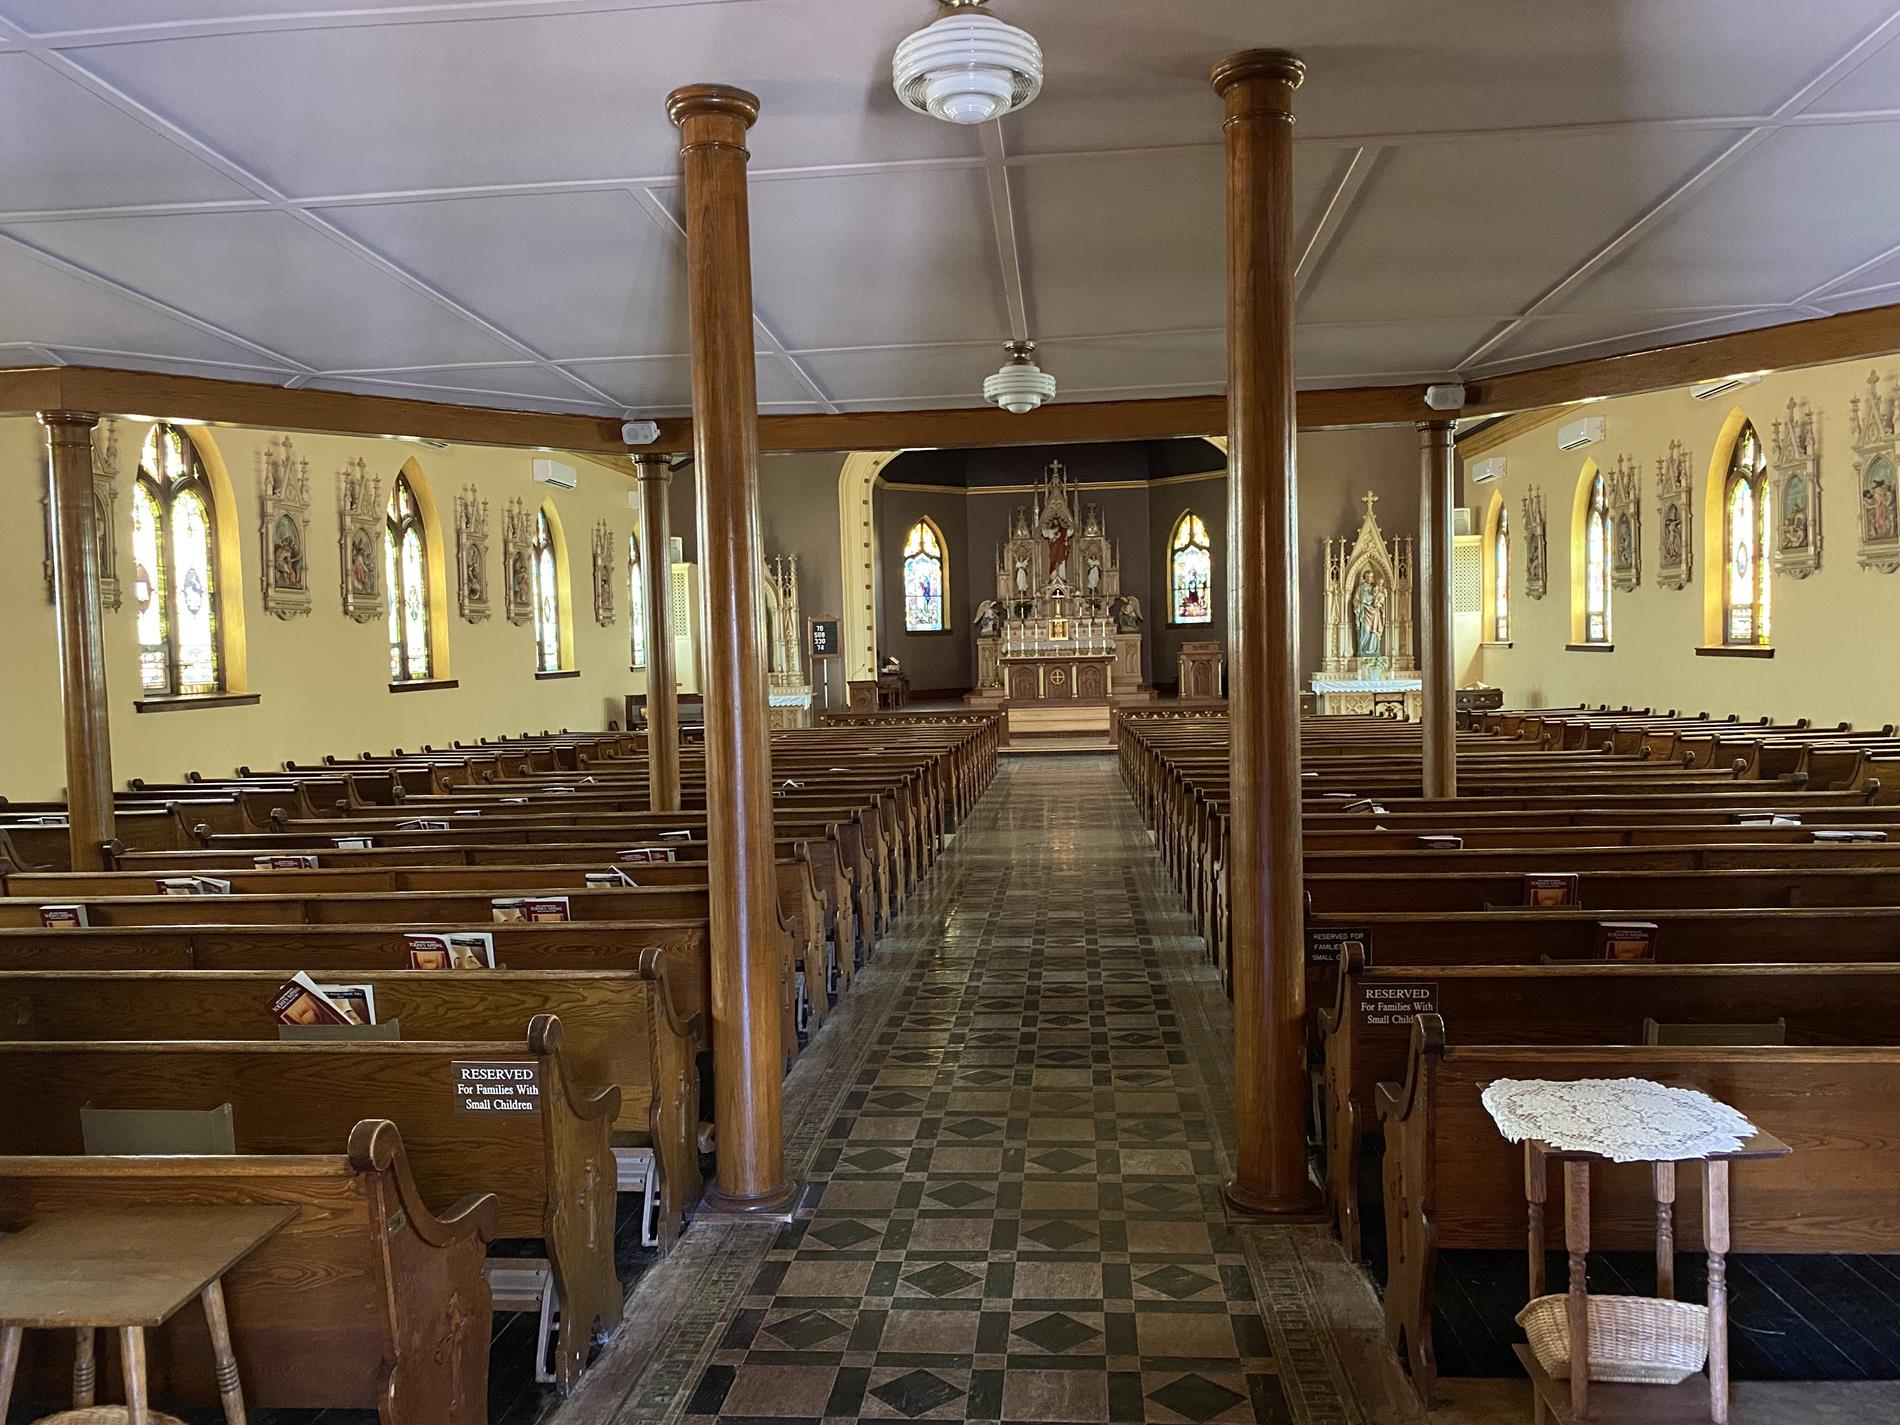 St. Eloi Sanctuary Interior